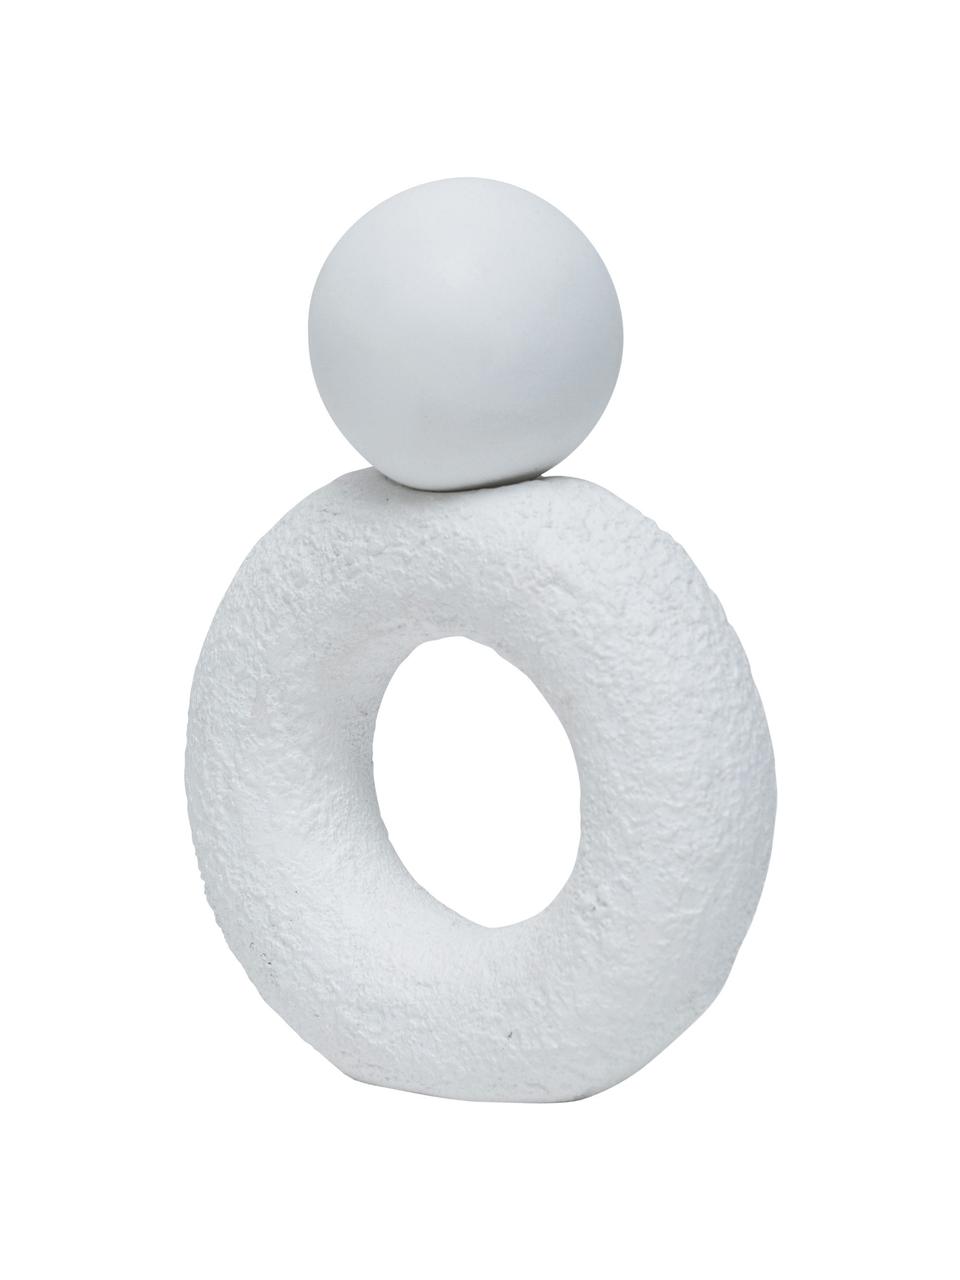 Oggetto decorativo bianco fatto a mano Minimalism, Ecomix
Ecomix è una miscela ecologica di polpa di carta riciclata, gomma naturale e polvere di gesso, Bianco opaco, Larg. 16 x Alt. 23 cm